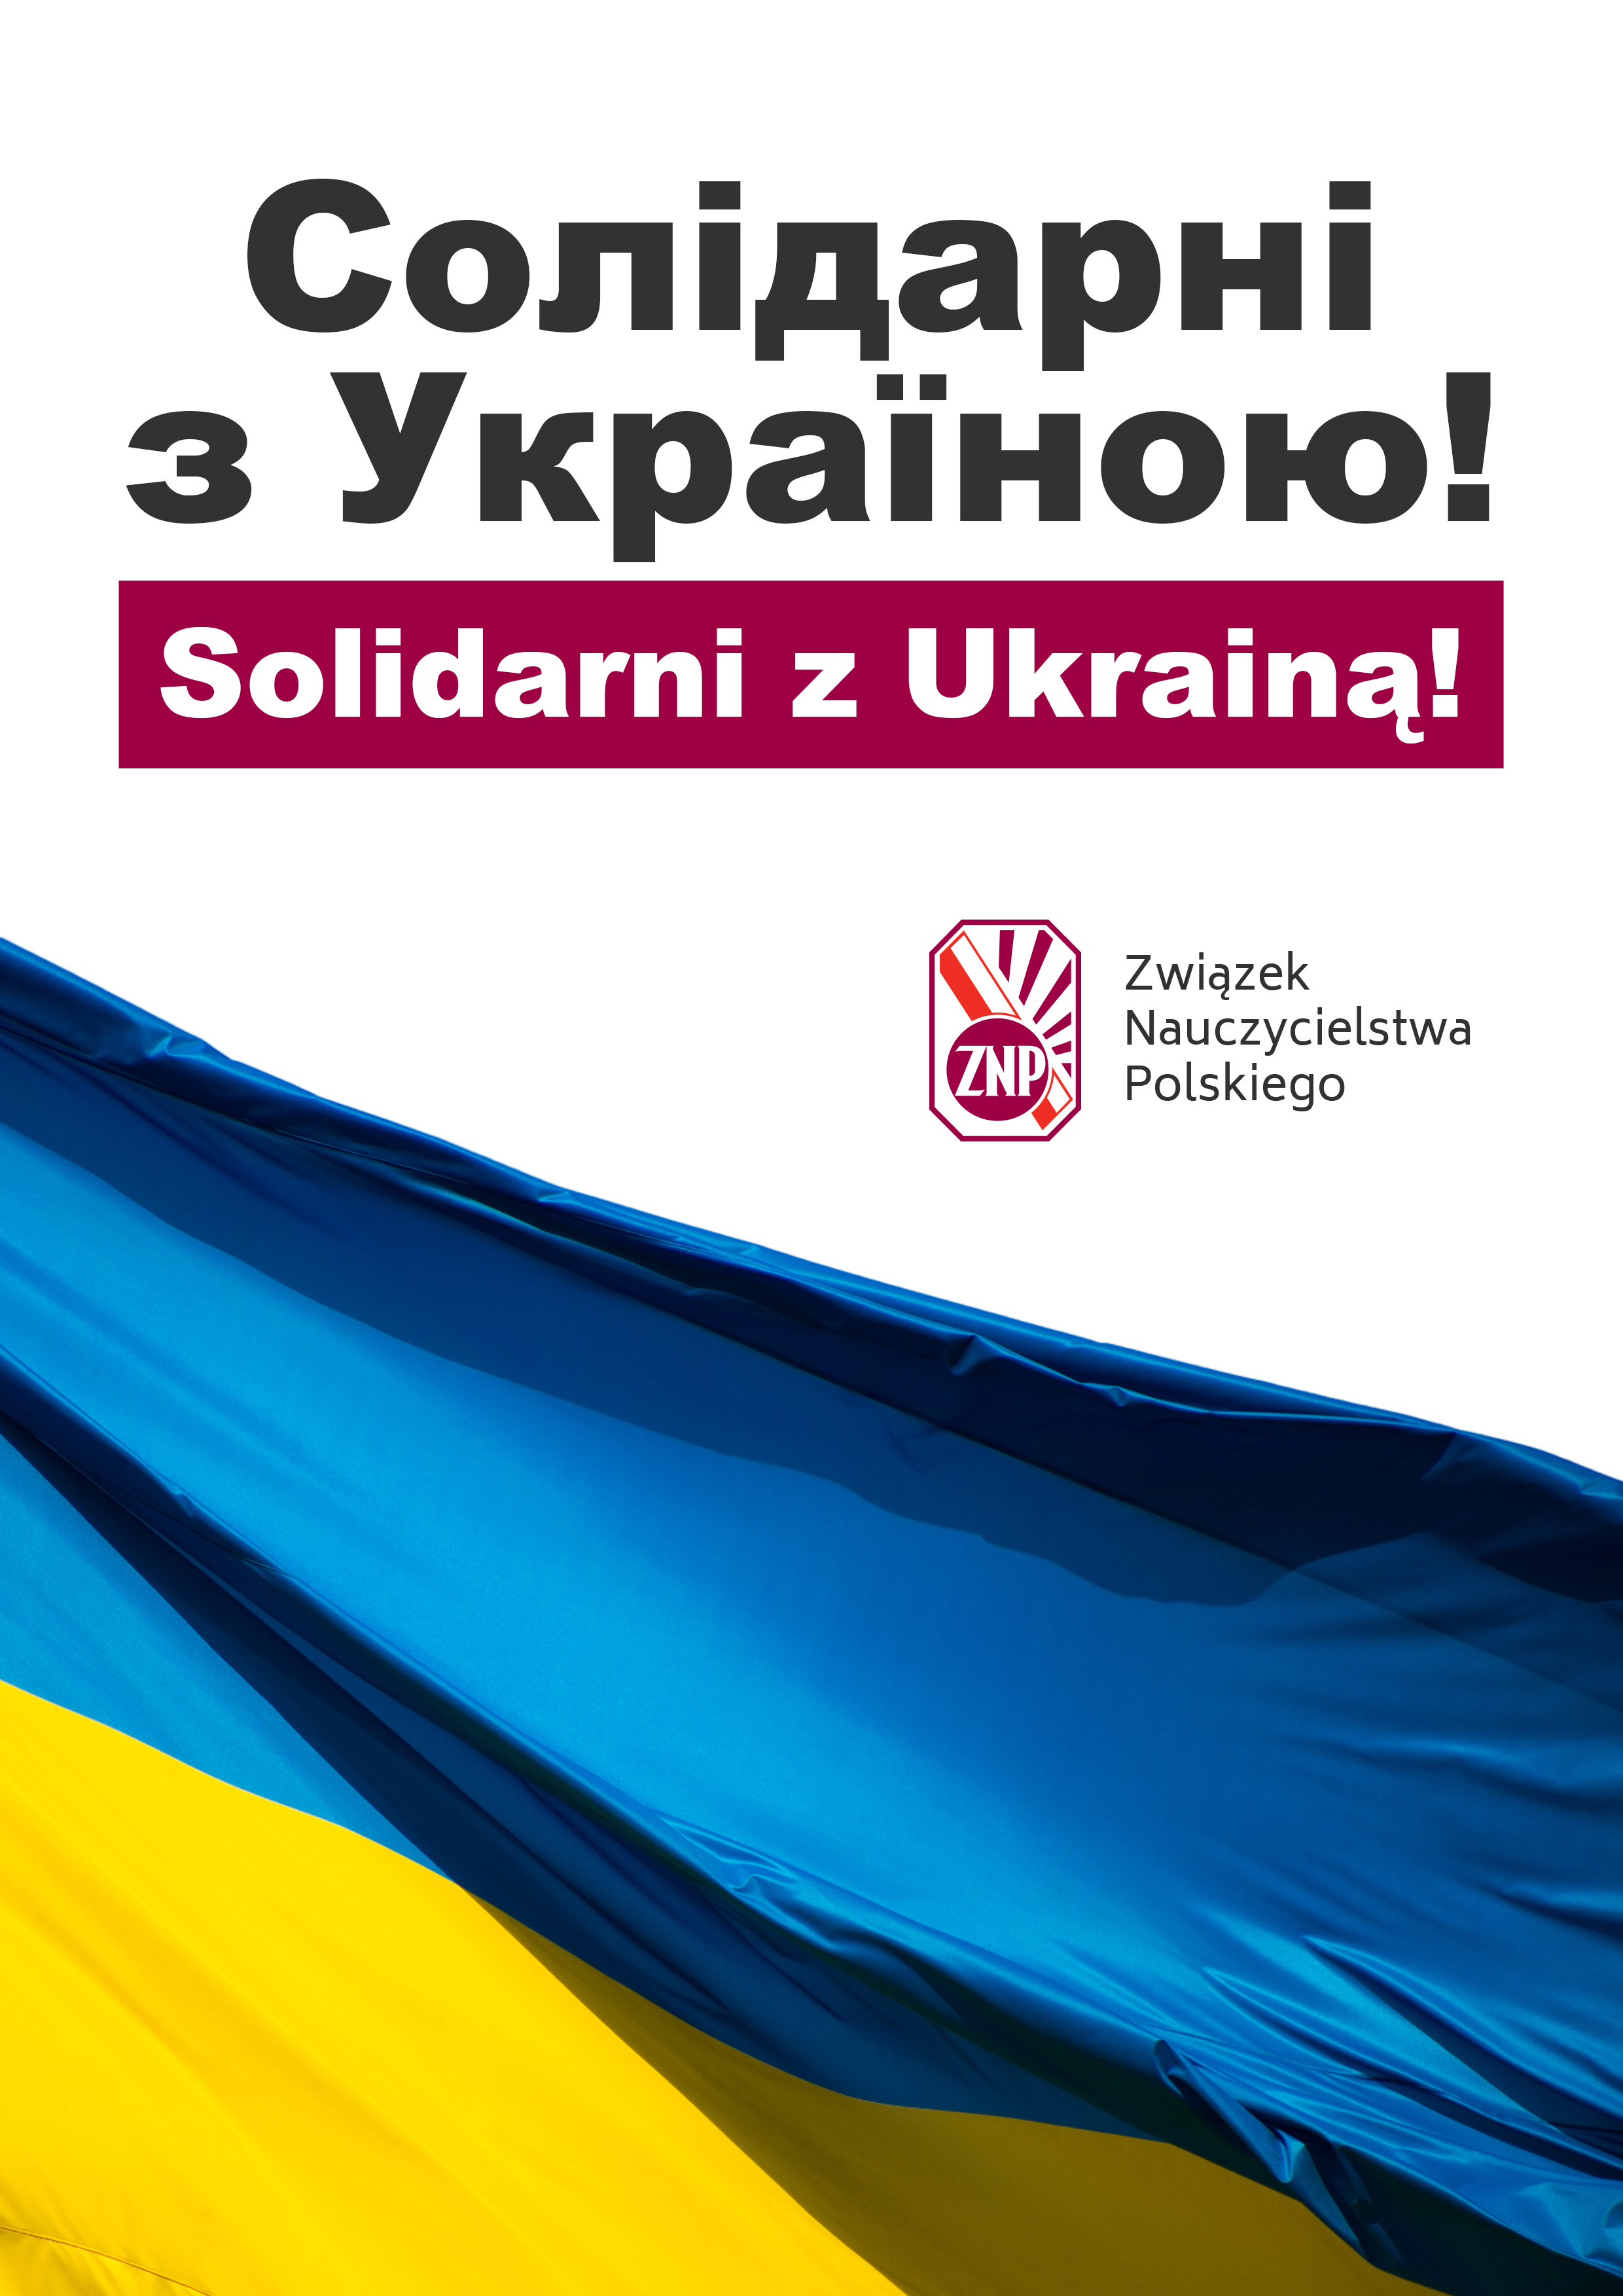 znp_plakat_solidarni z ukraina.jpg [2.96 MB]